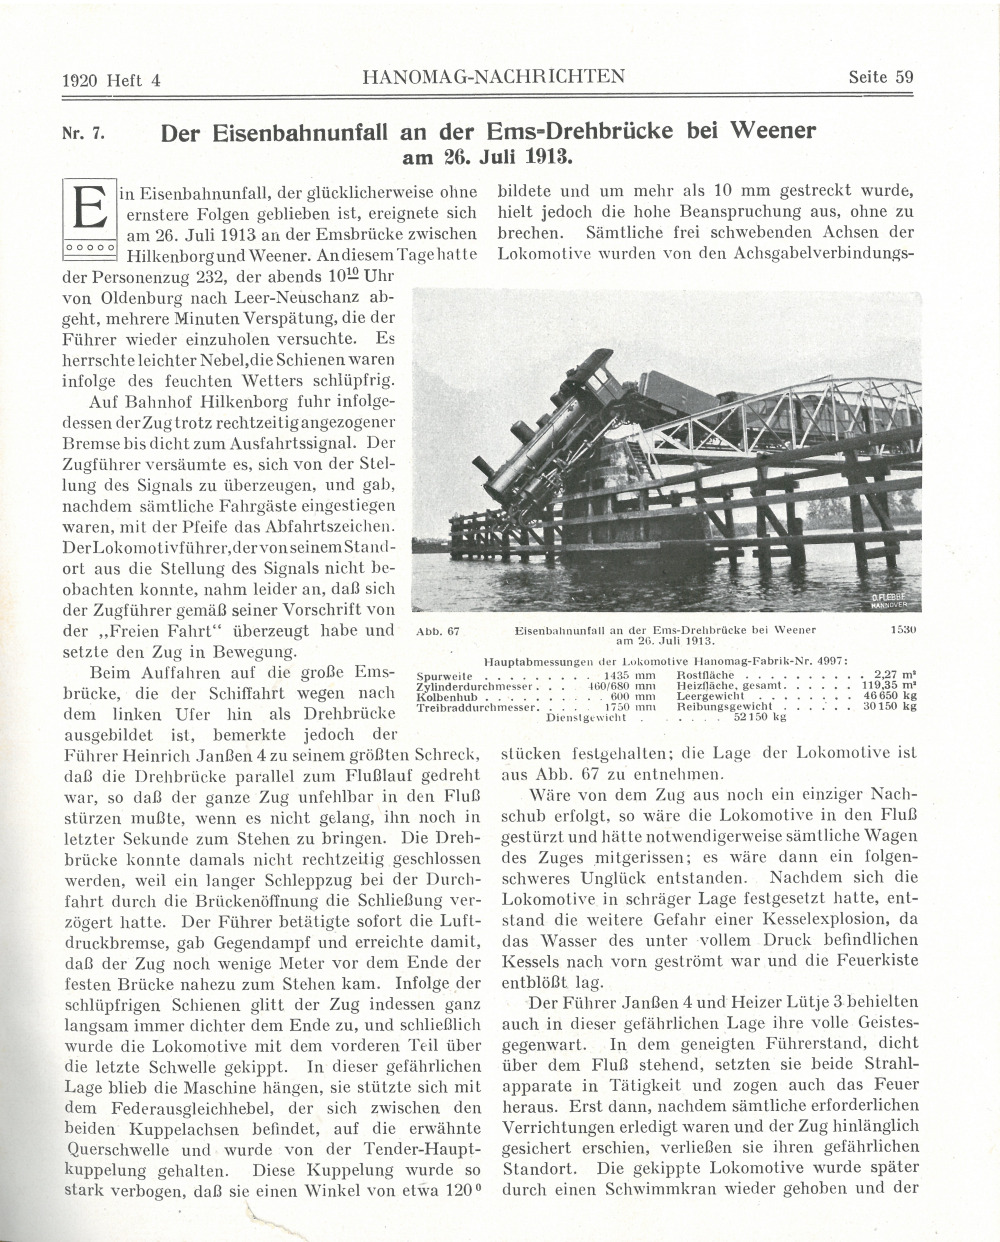 Der Eisenbahnunfall auf der Ems-Drehbrücke bei Weener - Seite 1